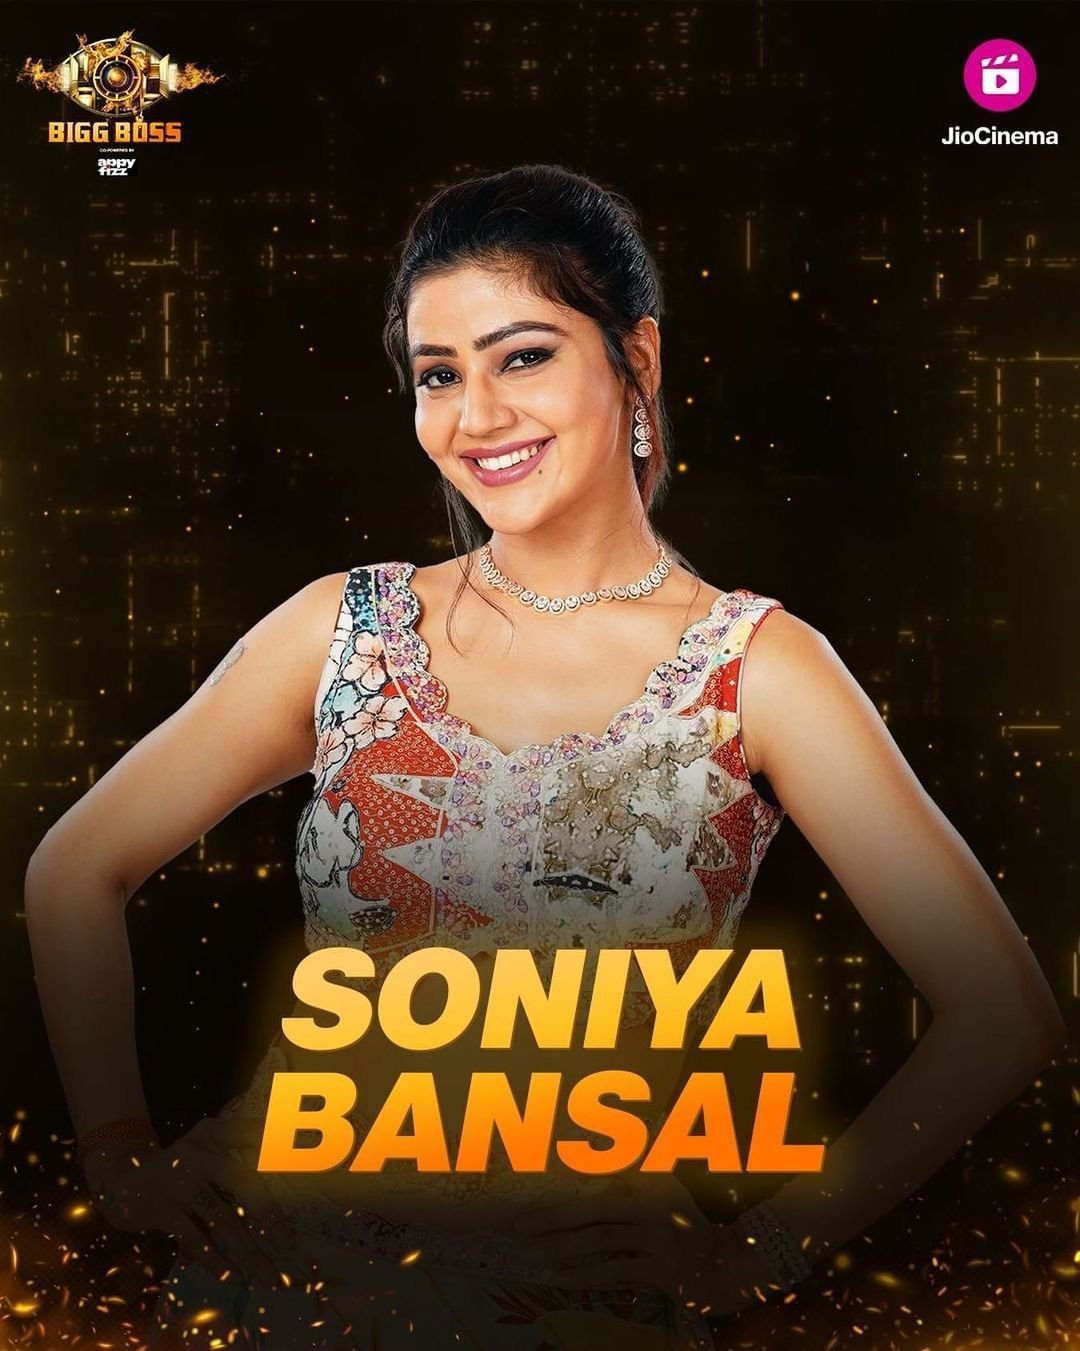 Bigg Boss 17 Elimination: Soniya Bansal